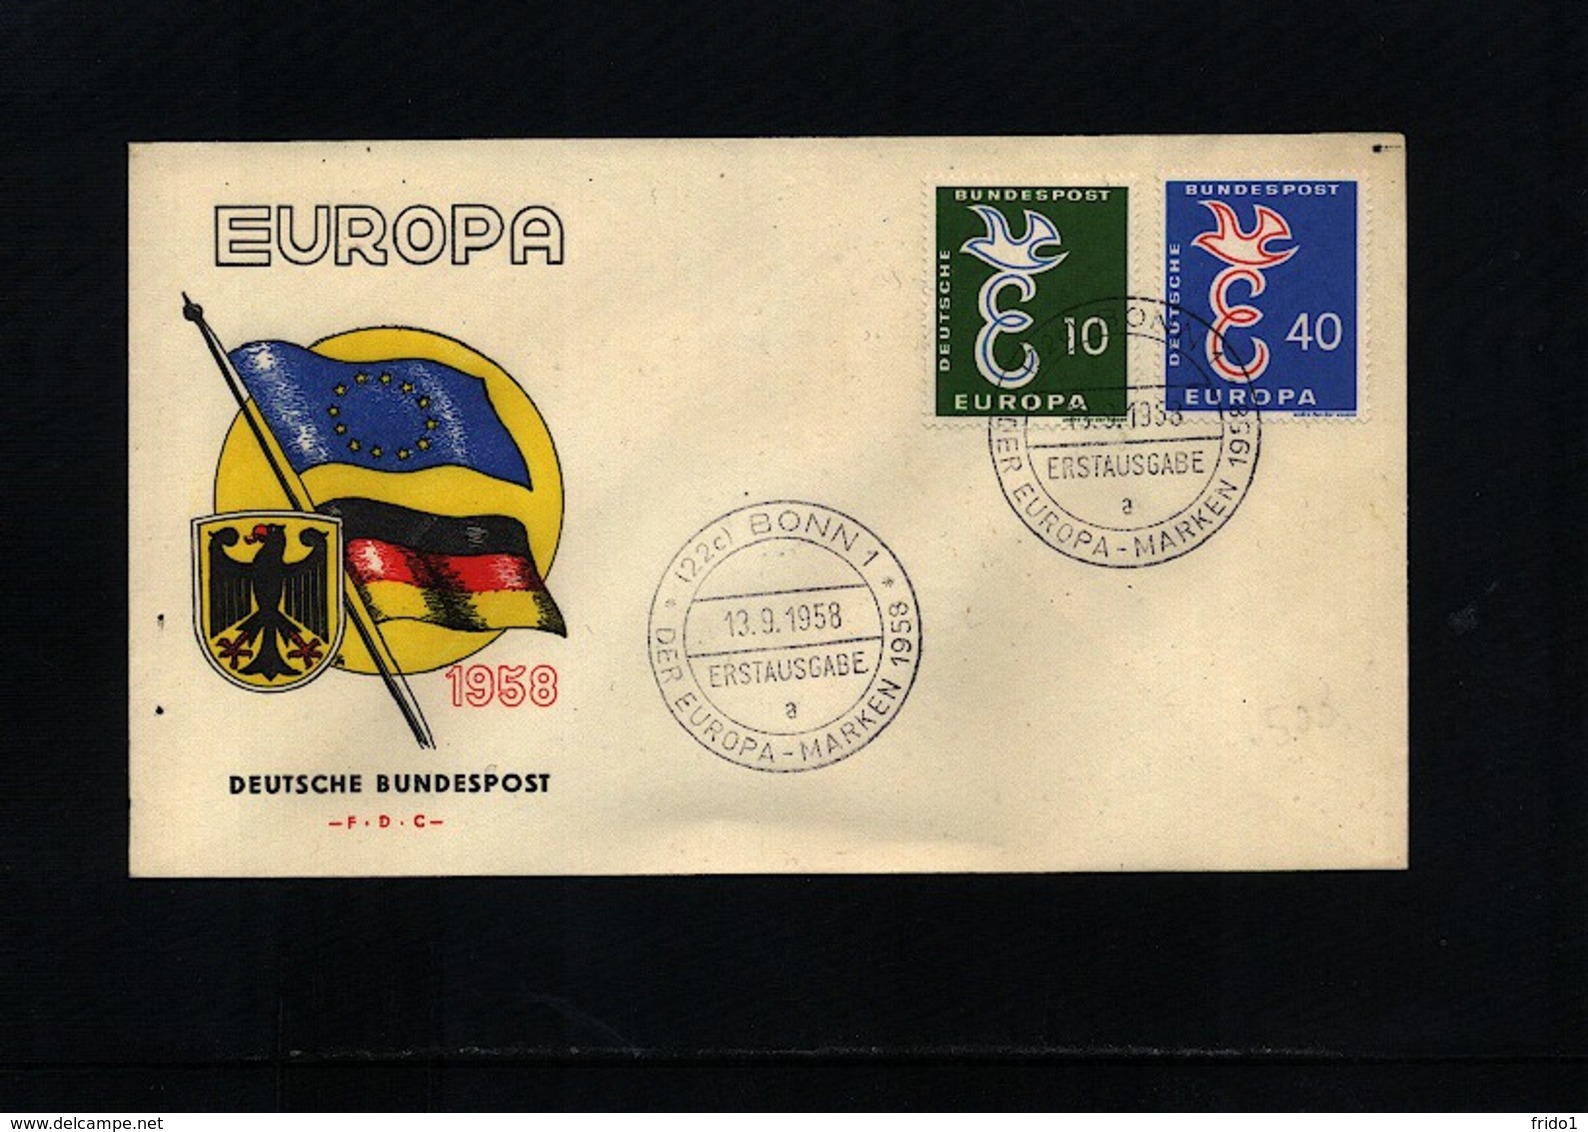 Germany / Deutschland 1958 Europa Cept FDC - 1958